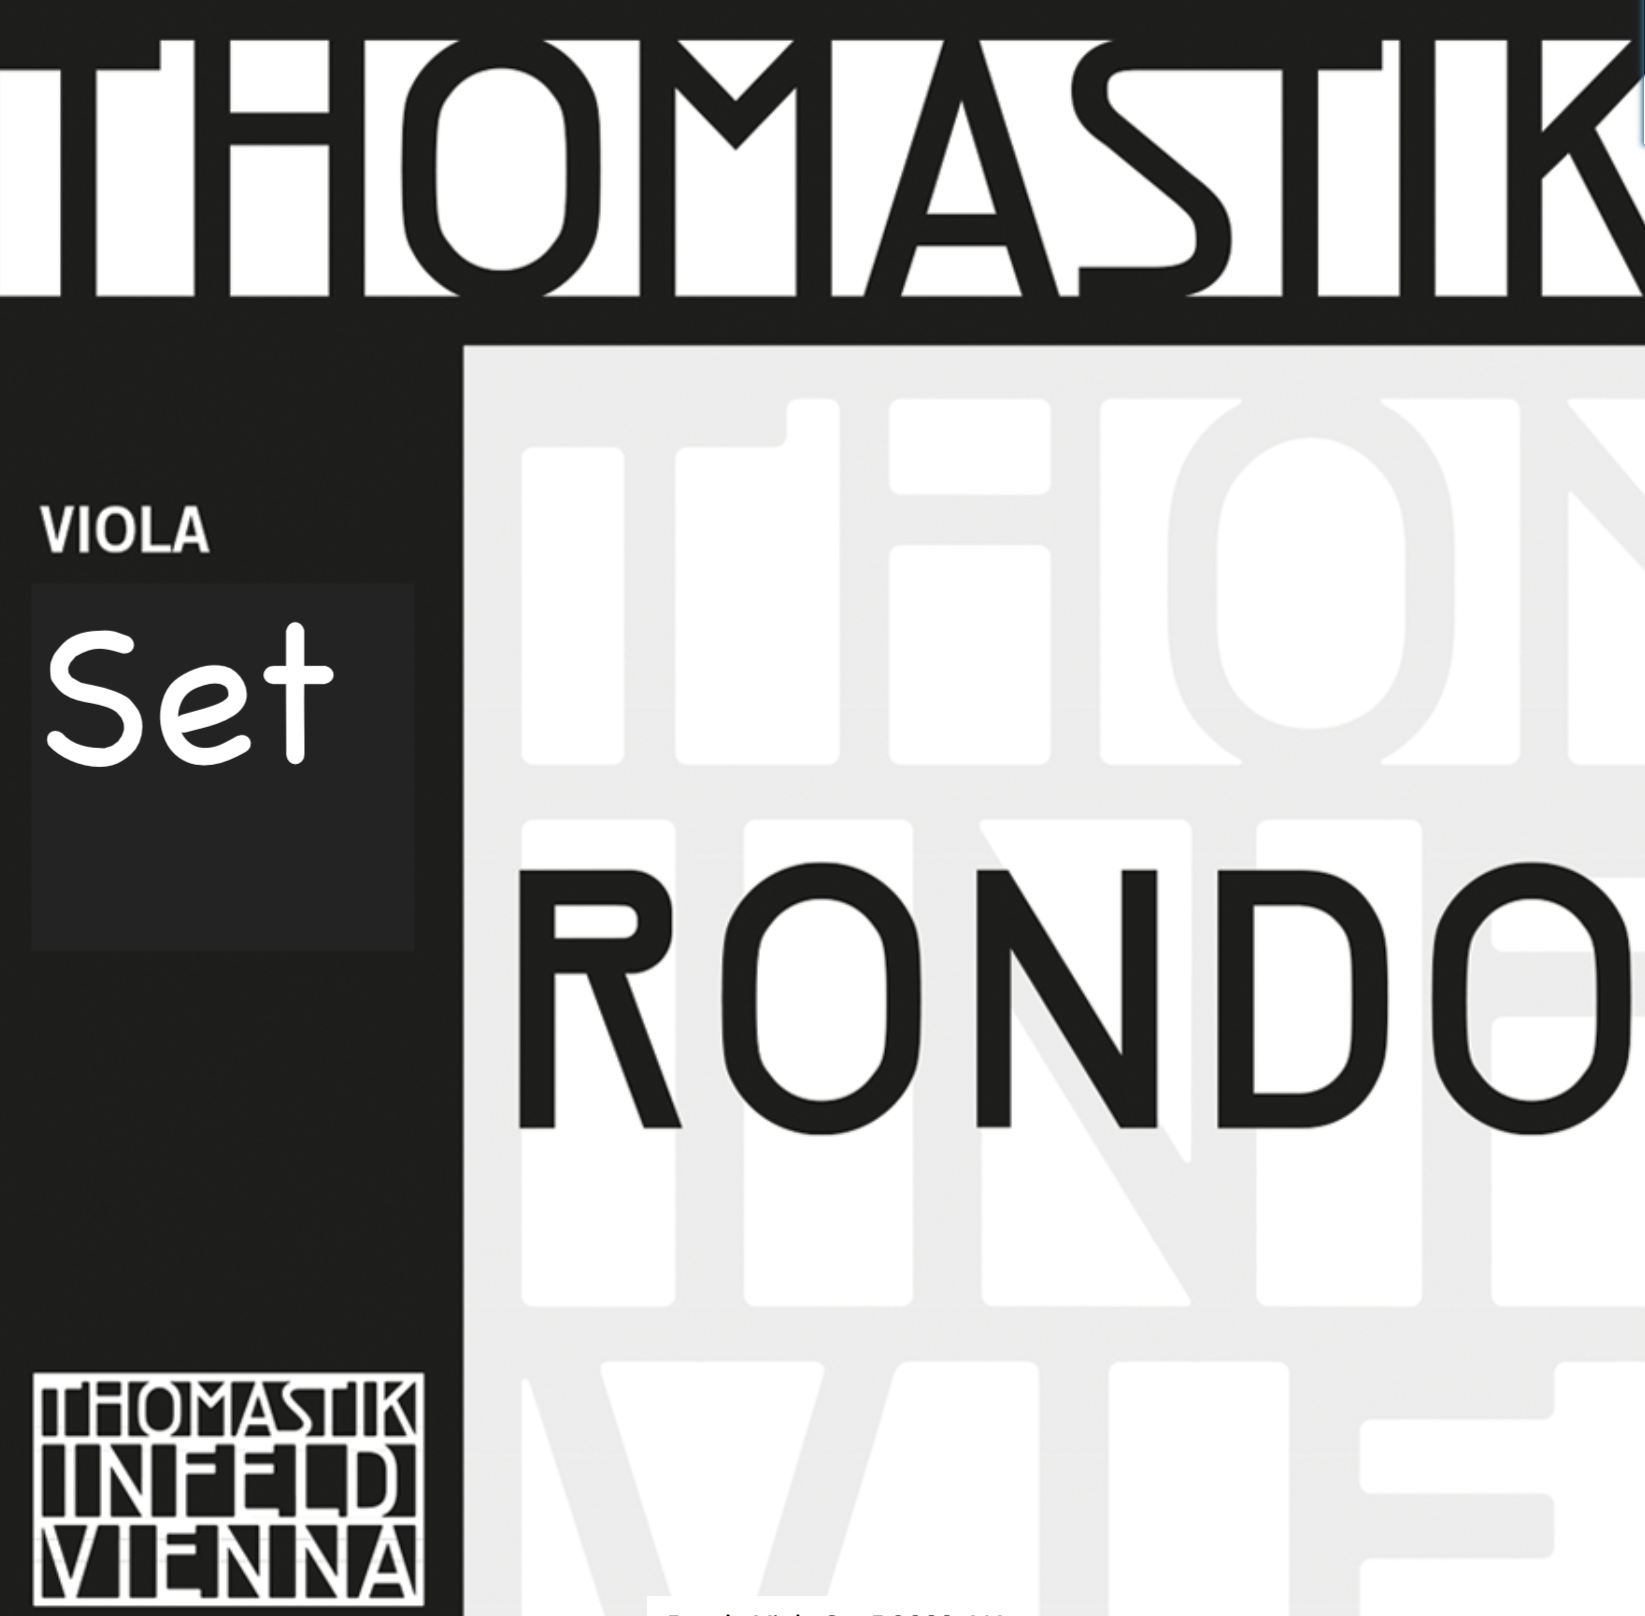 Thomastik-Infeld Rondo viola string set by Thomastik-Infeld, straight